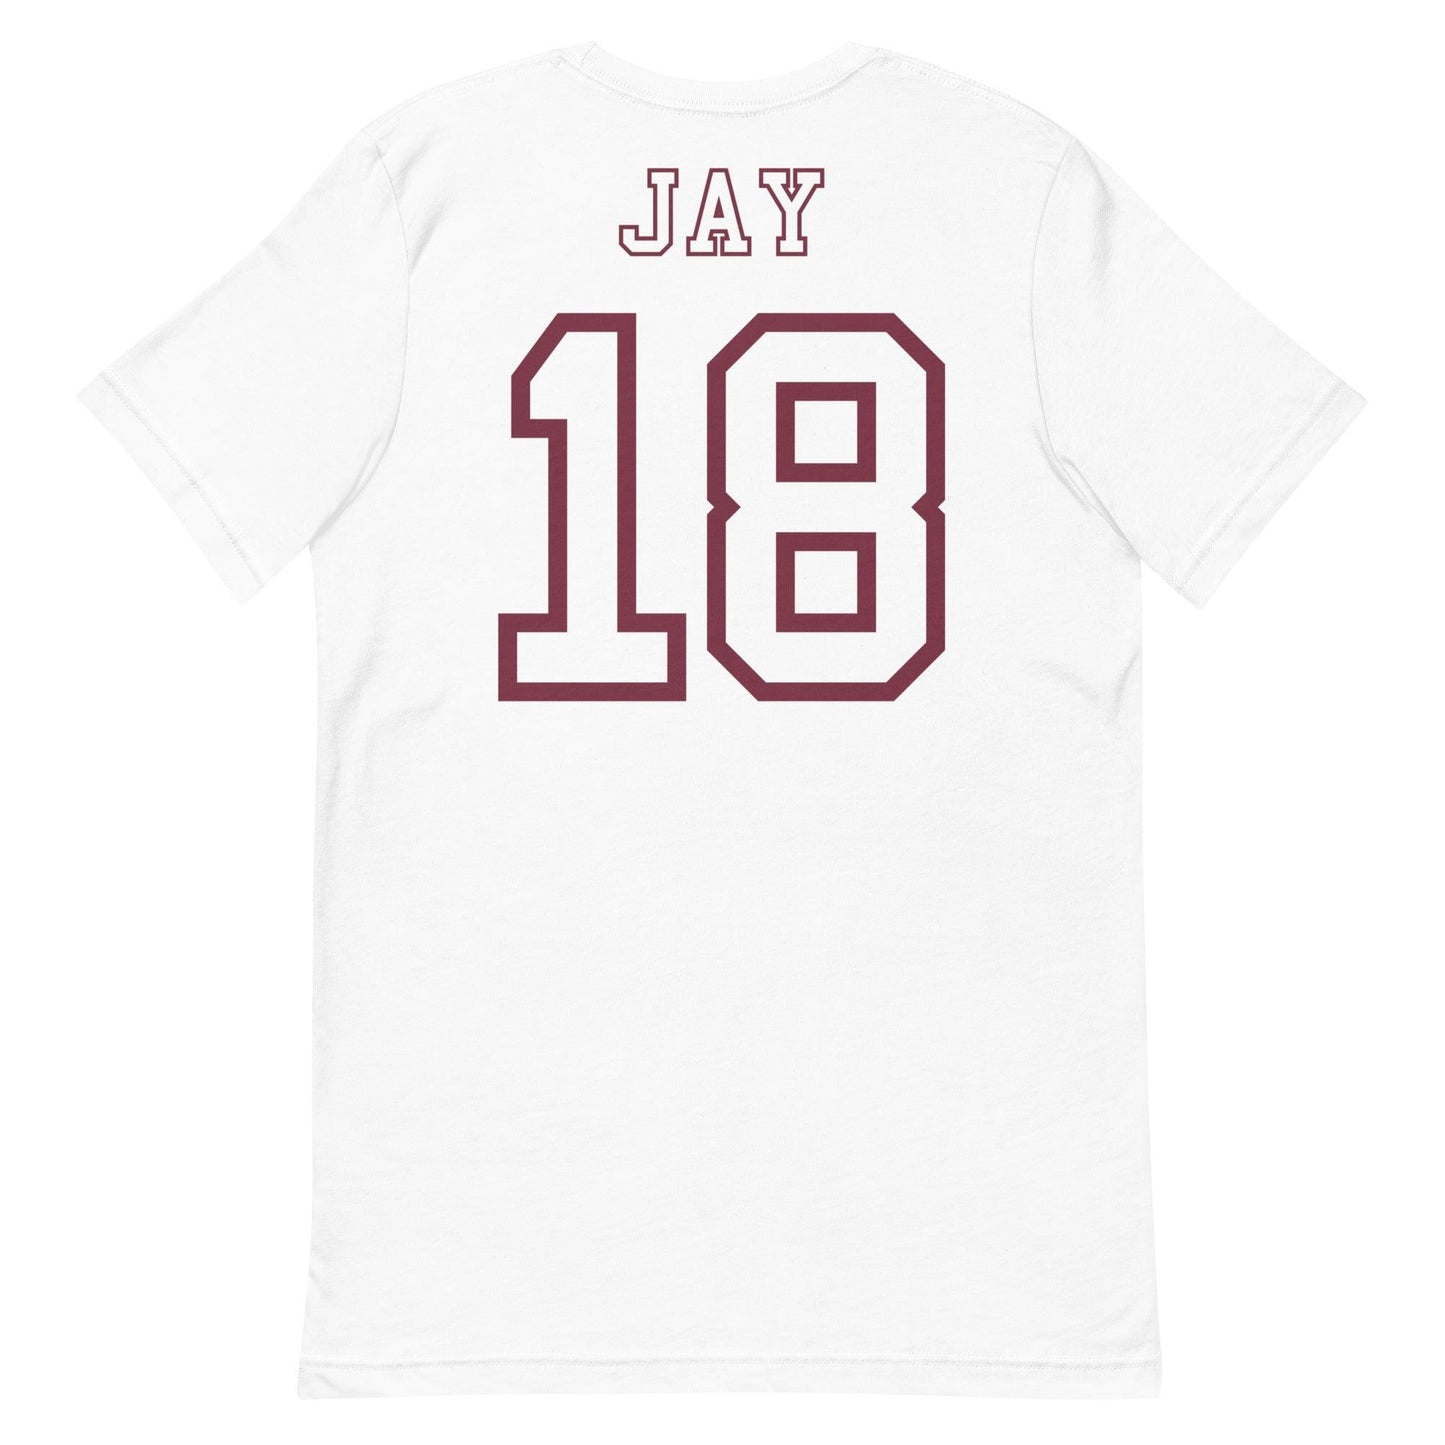 Travis Jay "Jersey" t-shirt - Fan Arch